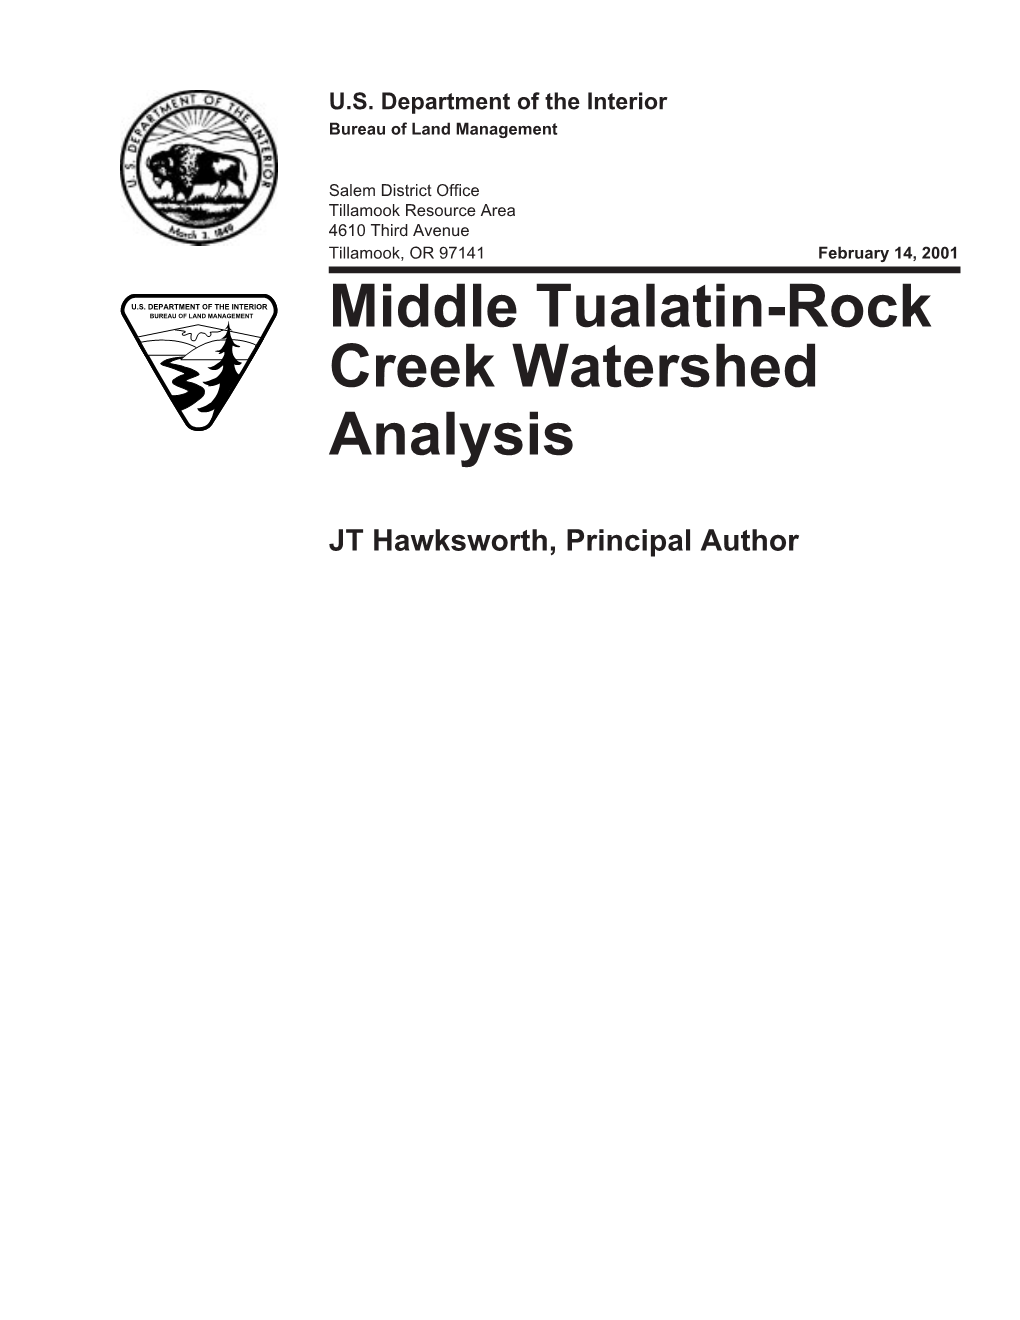 Middle Tualatin Rock Creek Watershed Analysis 2001